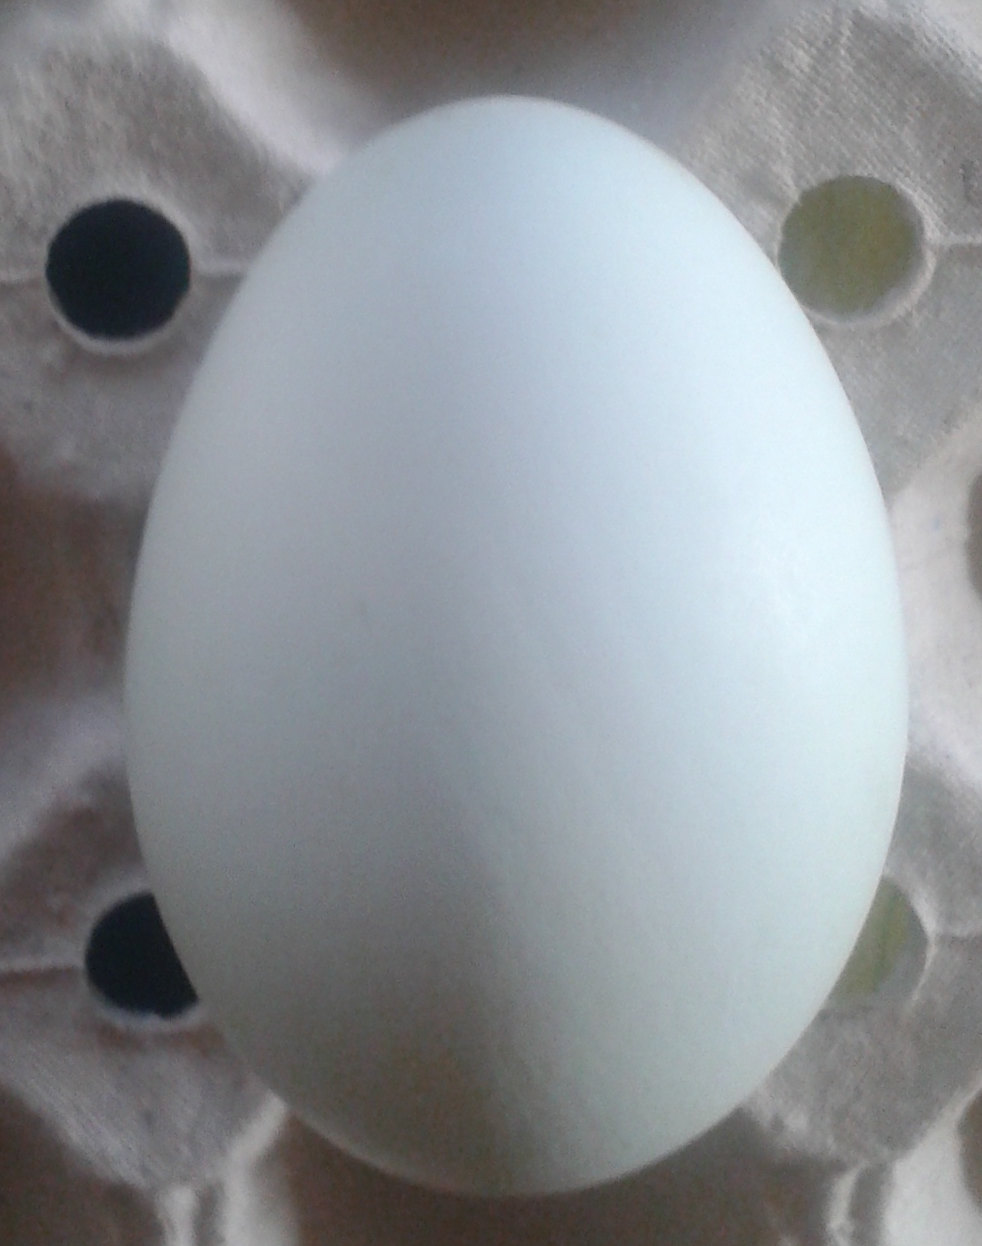  Averaged size eggs : duck, turkey